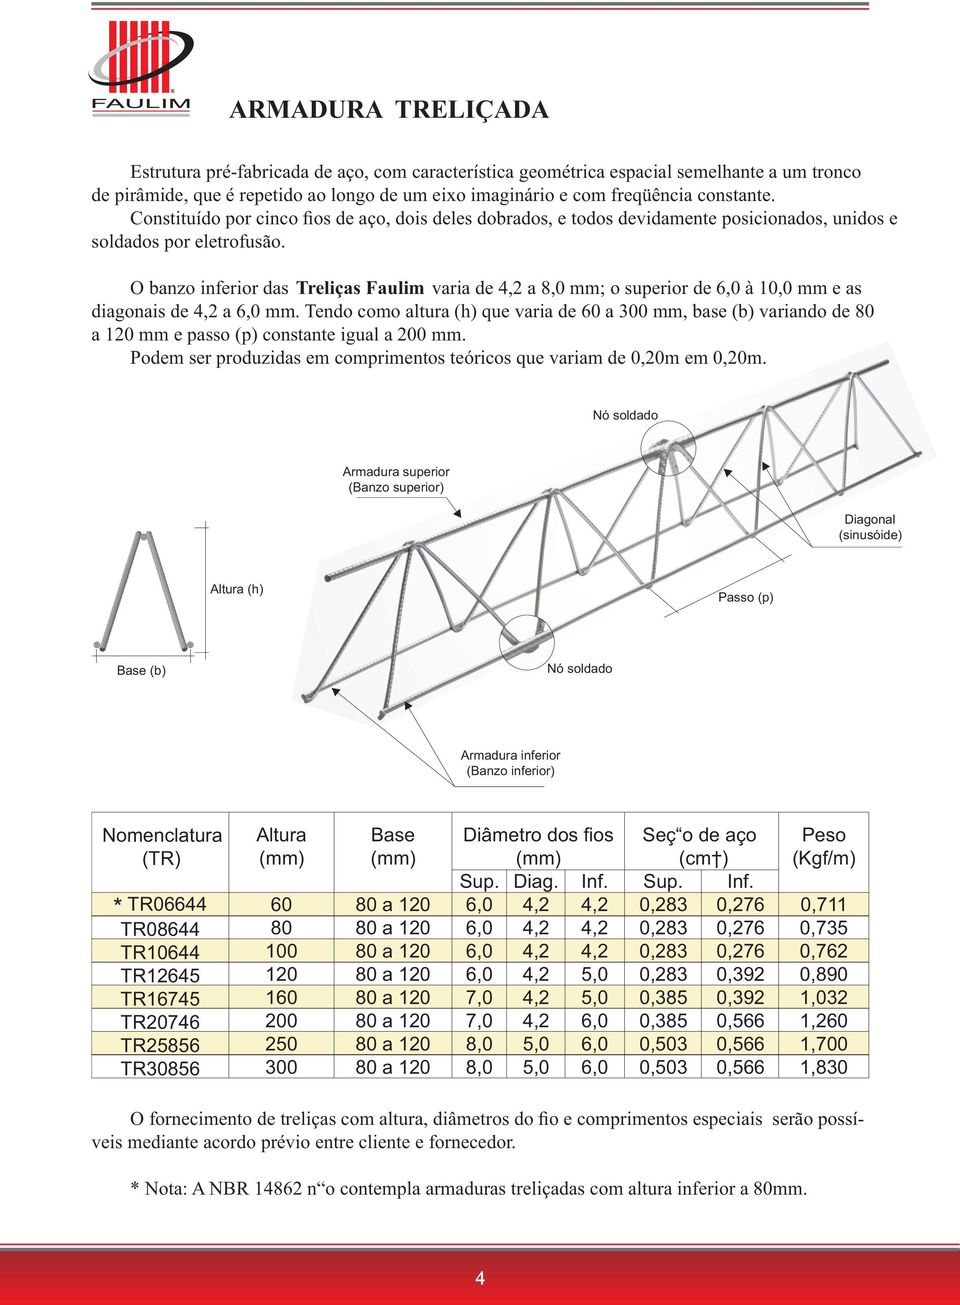 O banzo inferior das Treliças Faulim varia de 4,2 a 8,0 mm; o superior de 6,0 10,0 mm e as diagonais de 4,2 a 6,0 mm.